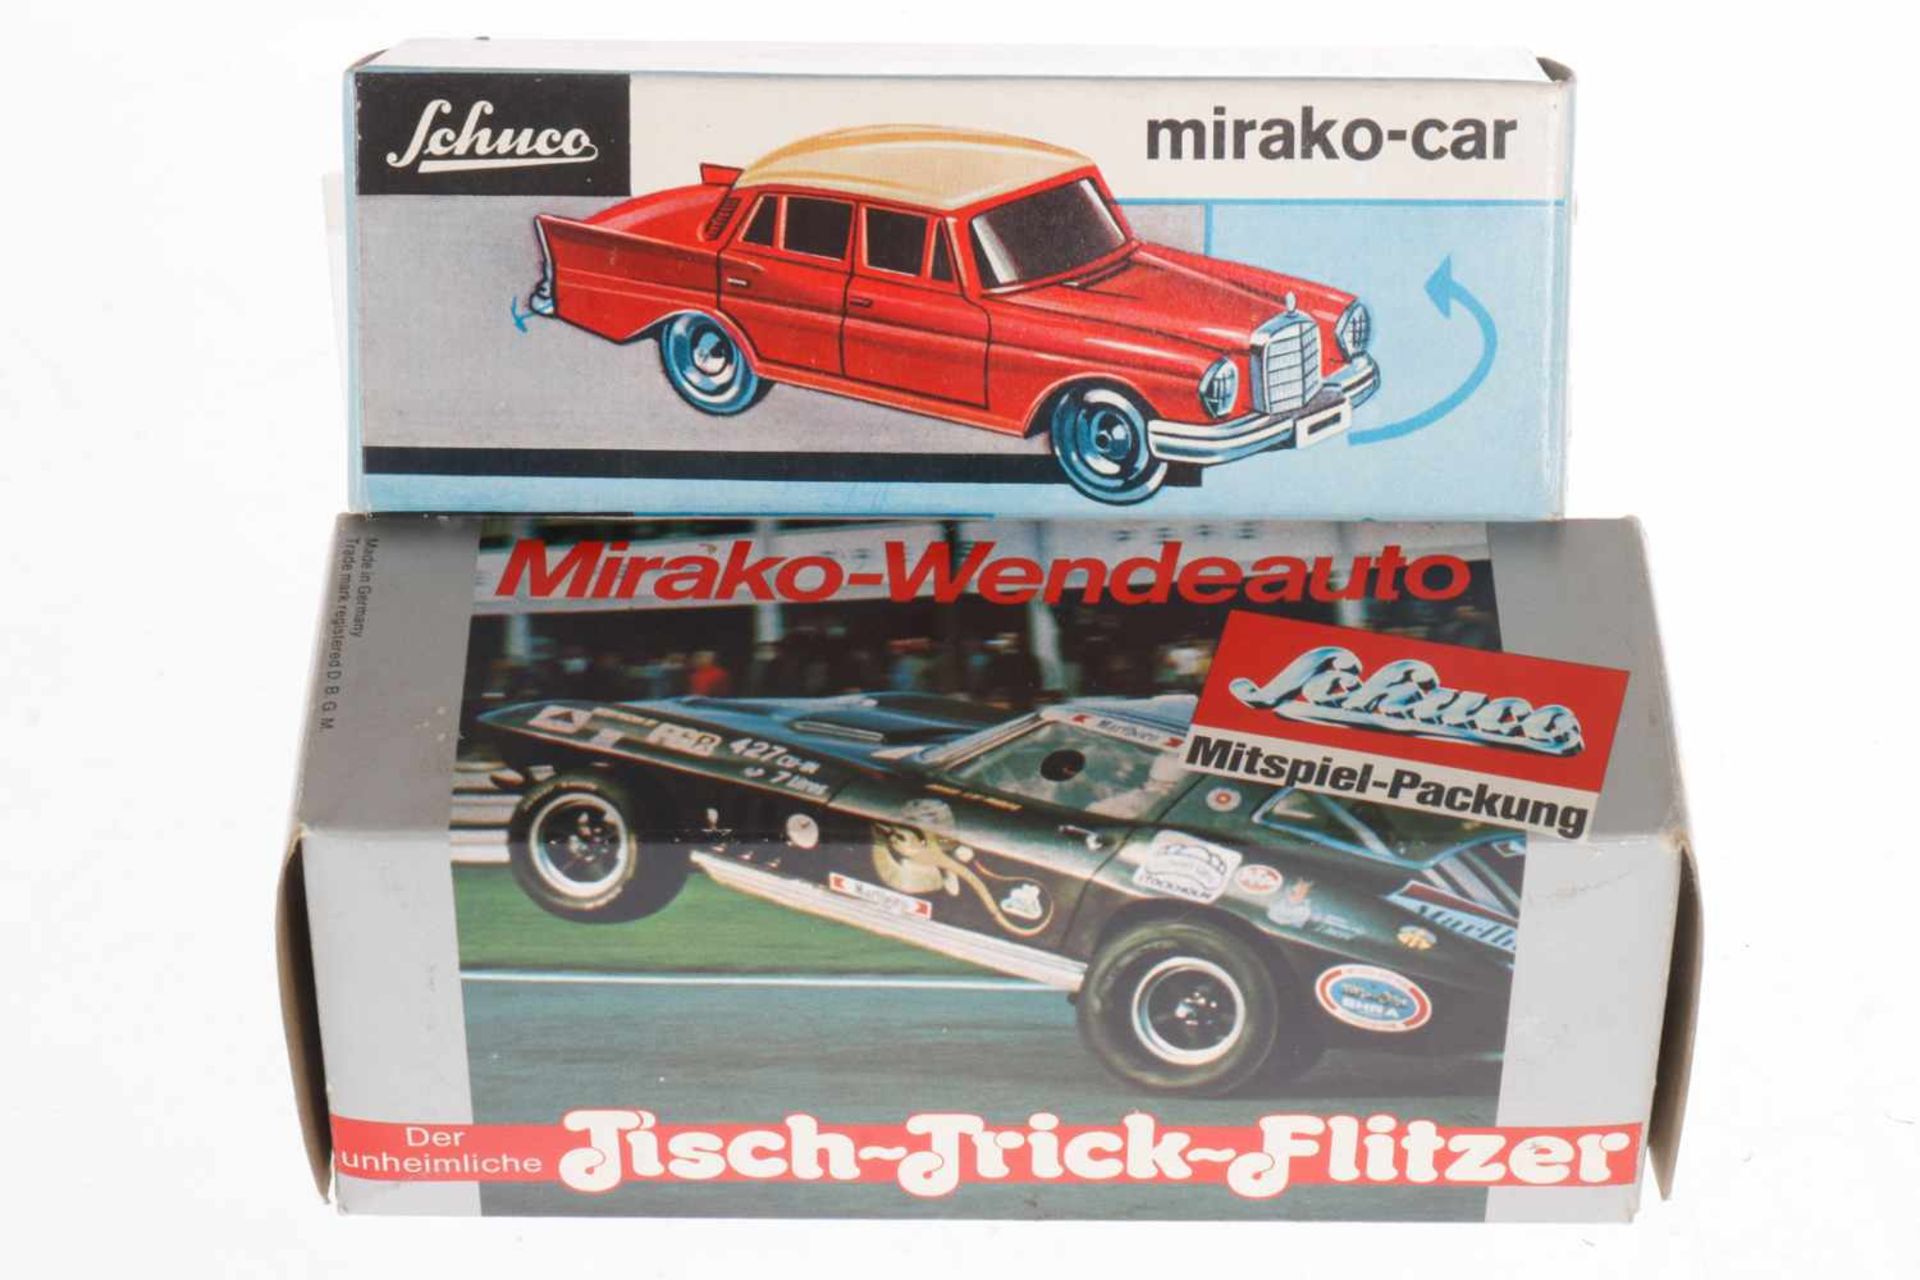 2 Schuco Autos, "Mirako-Car" 1001/1 und "Mirako-Wendeauto" Mercedes 350 SE, Nr. 351/101, Uhrwerke